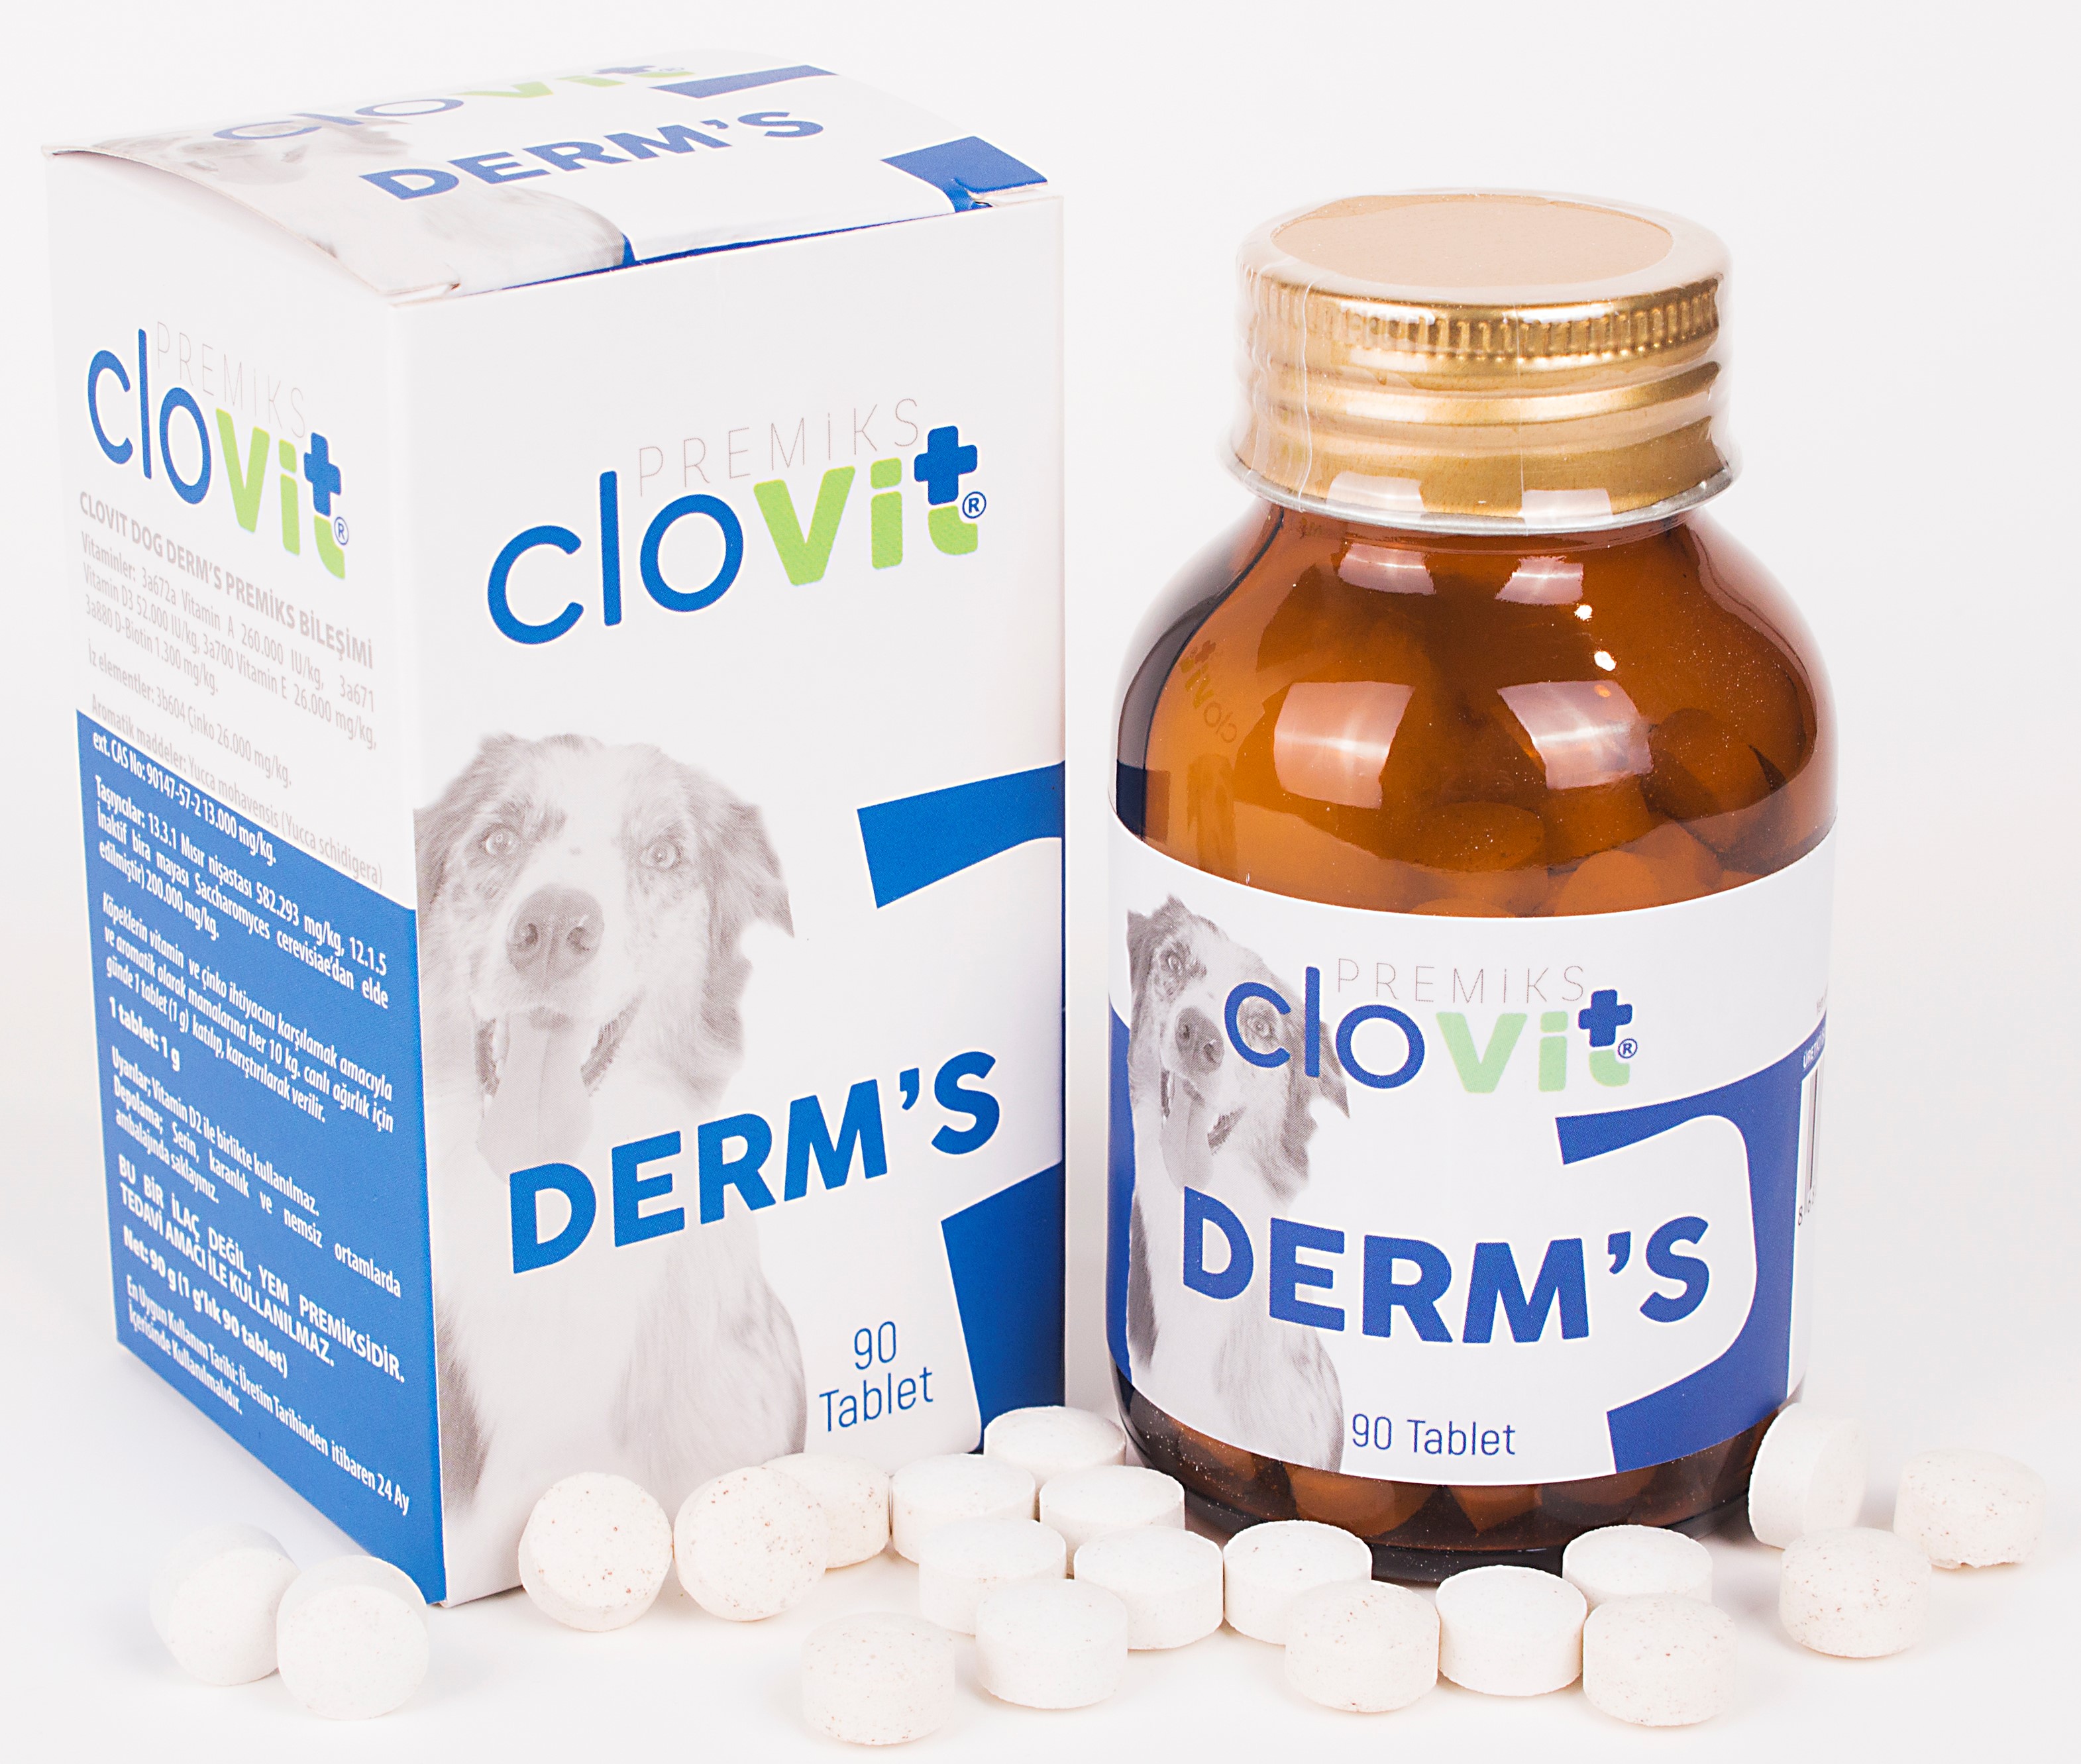 Clovit Köpek Derm's sağlıklı deri ve tüyler için gerekl